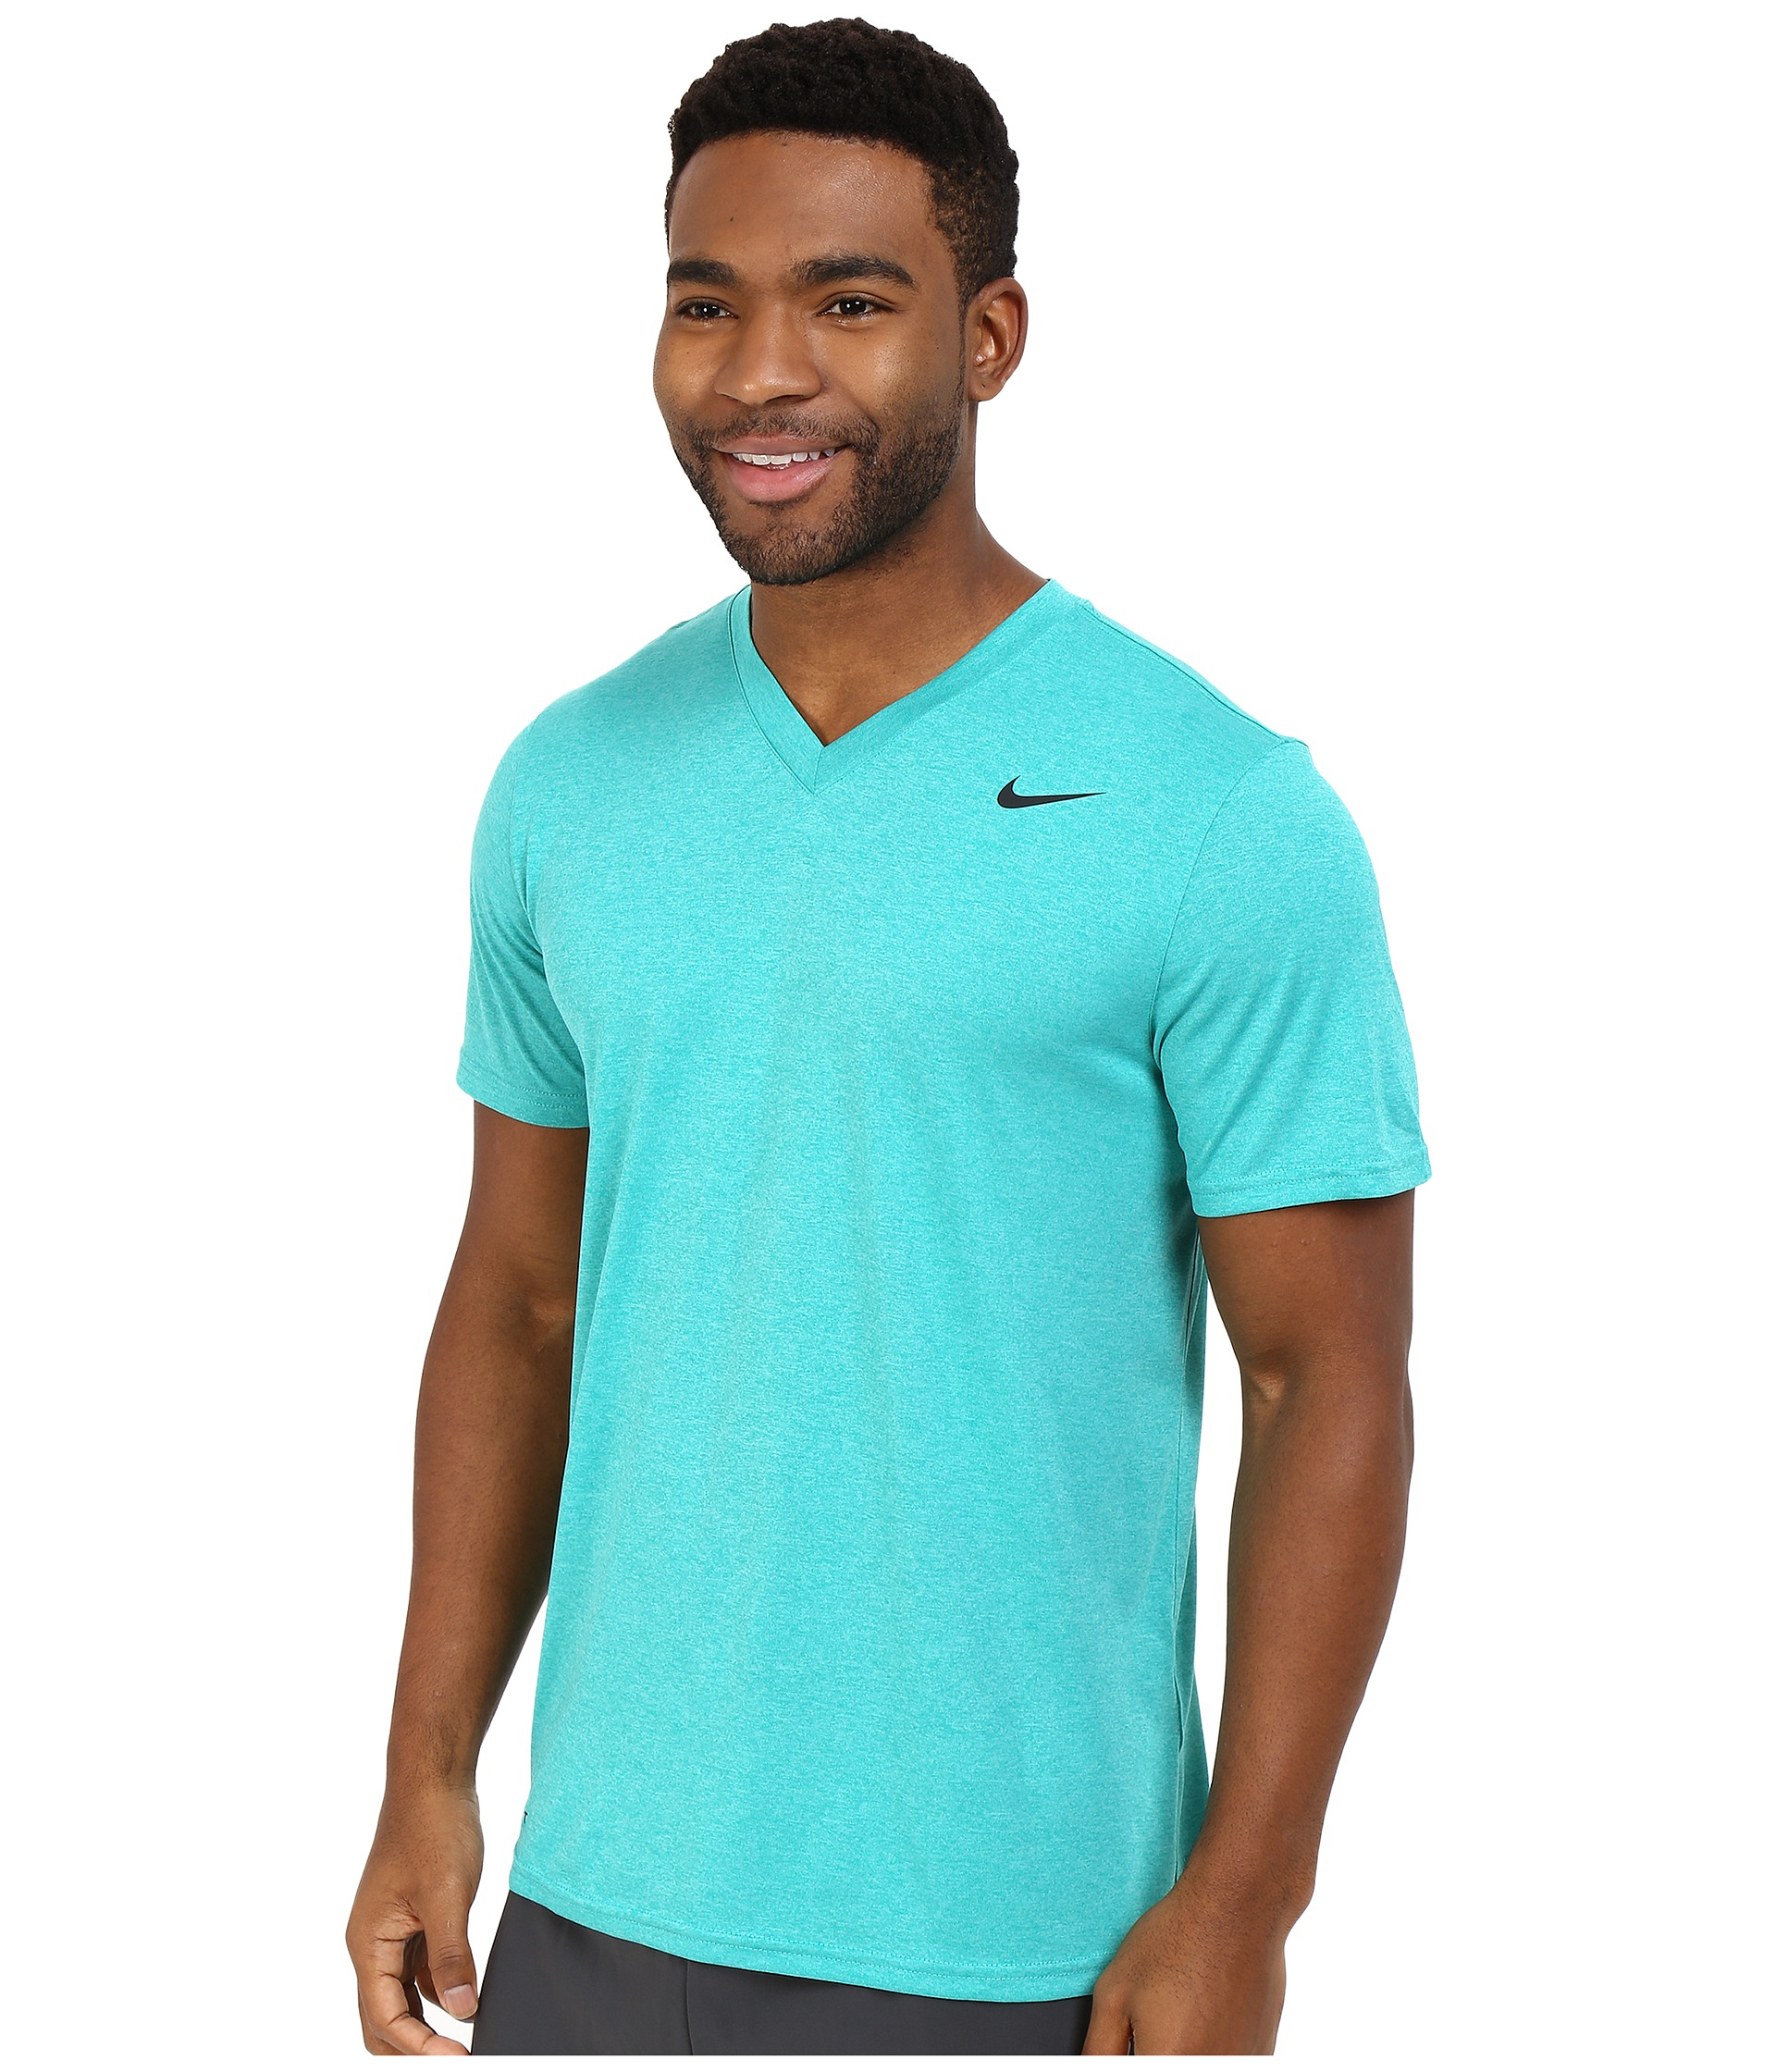 Nike Legend 2.0 Short Sleeve V-neck Tee in for Men